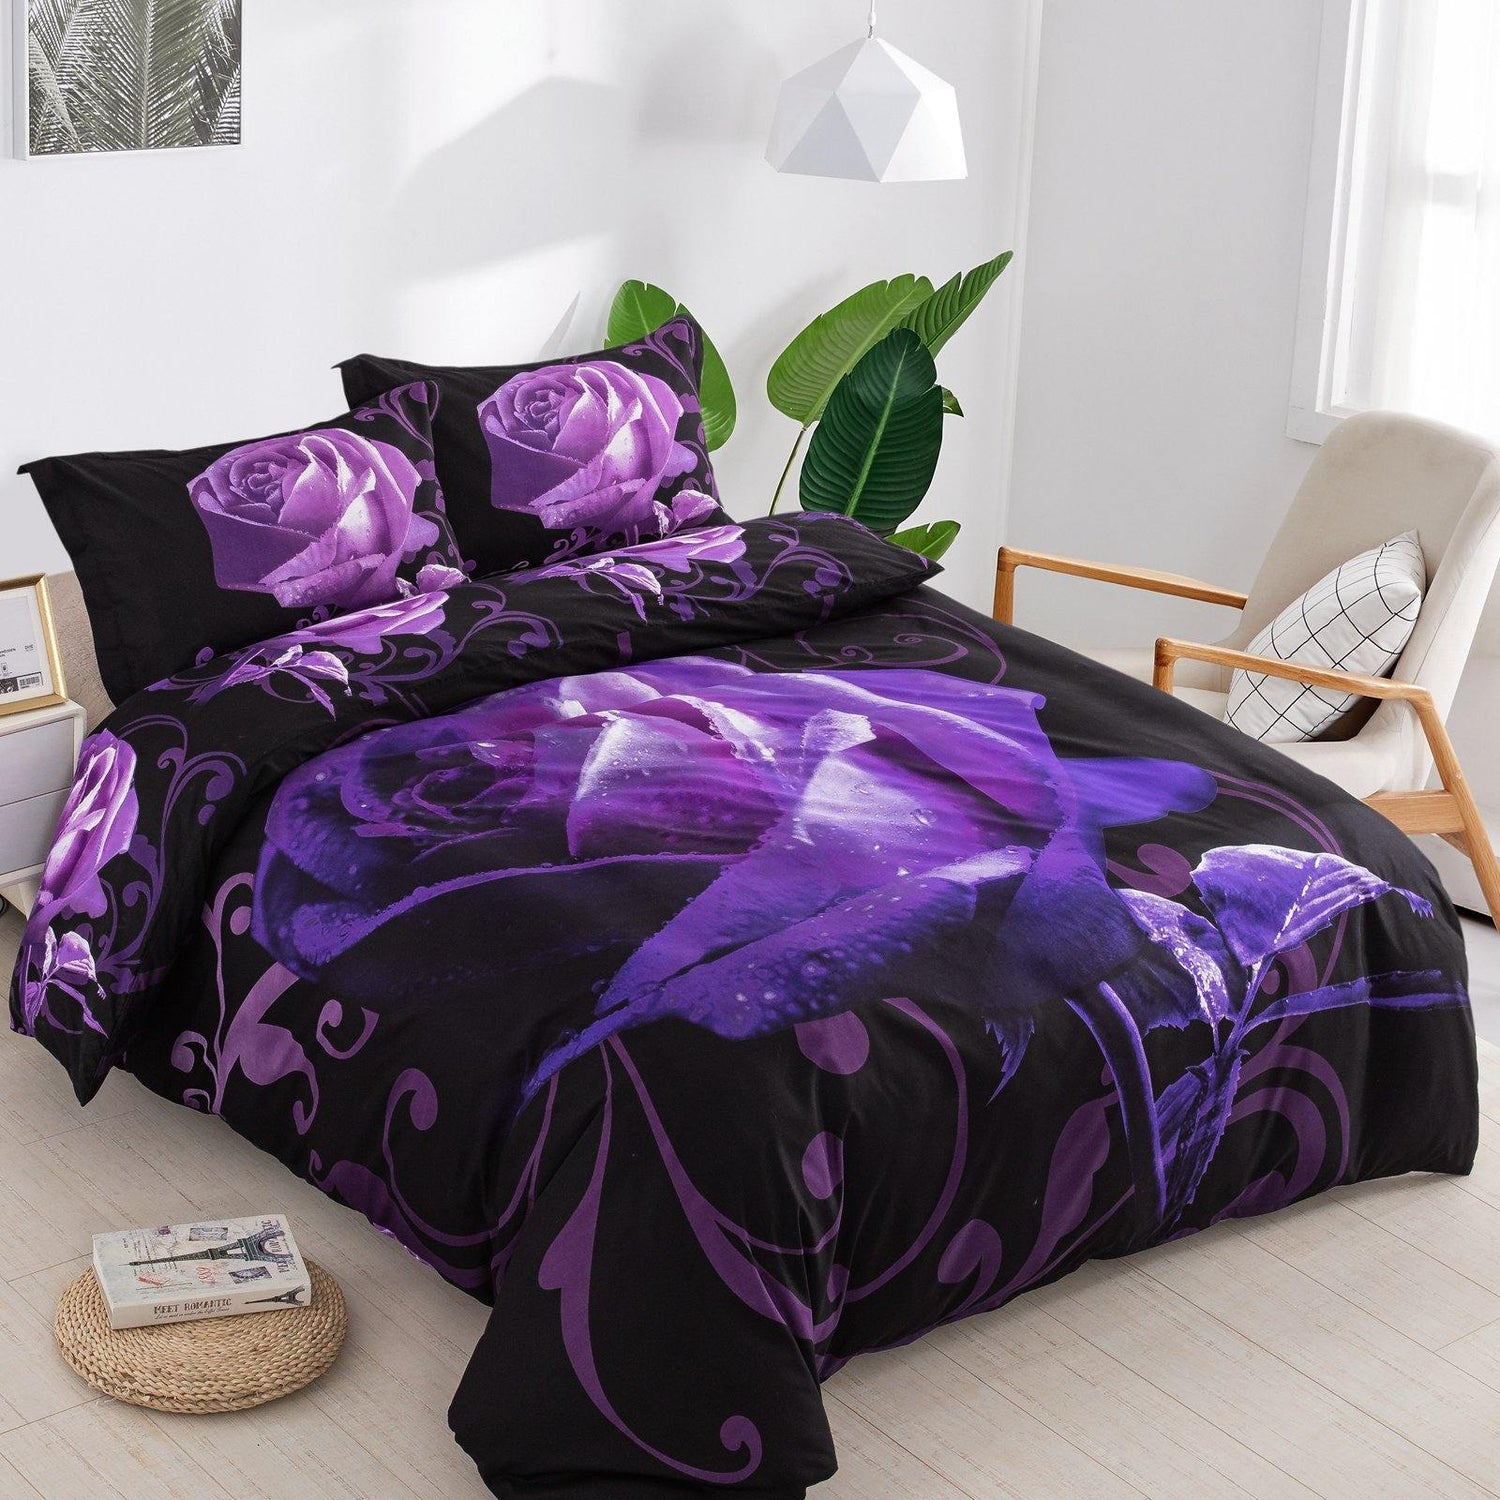 WONGS BEDDING Purple Oversized Flowers Duvet Cover Pillowcase Set - Wongs bedding